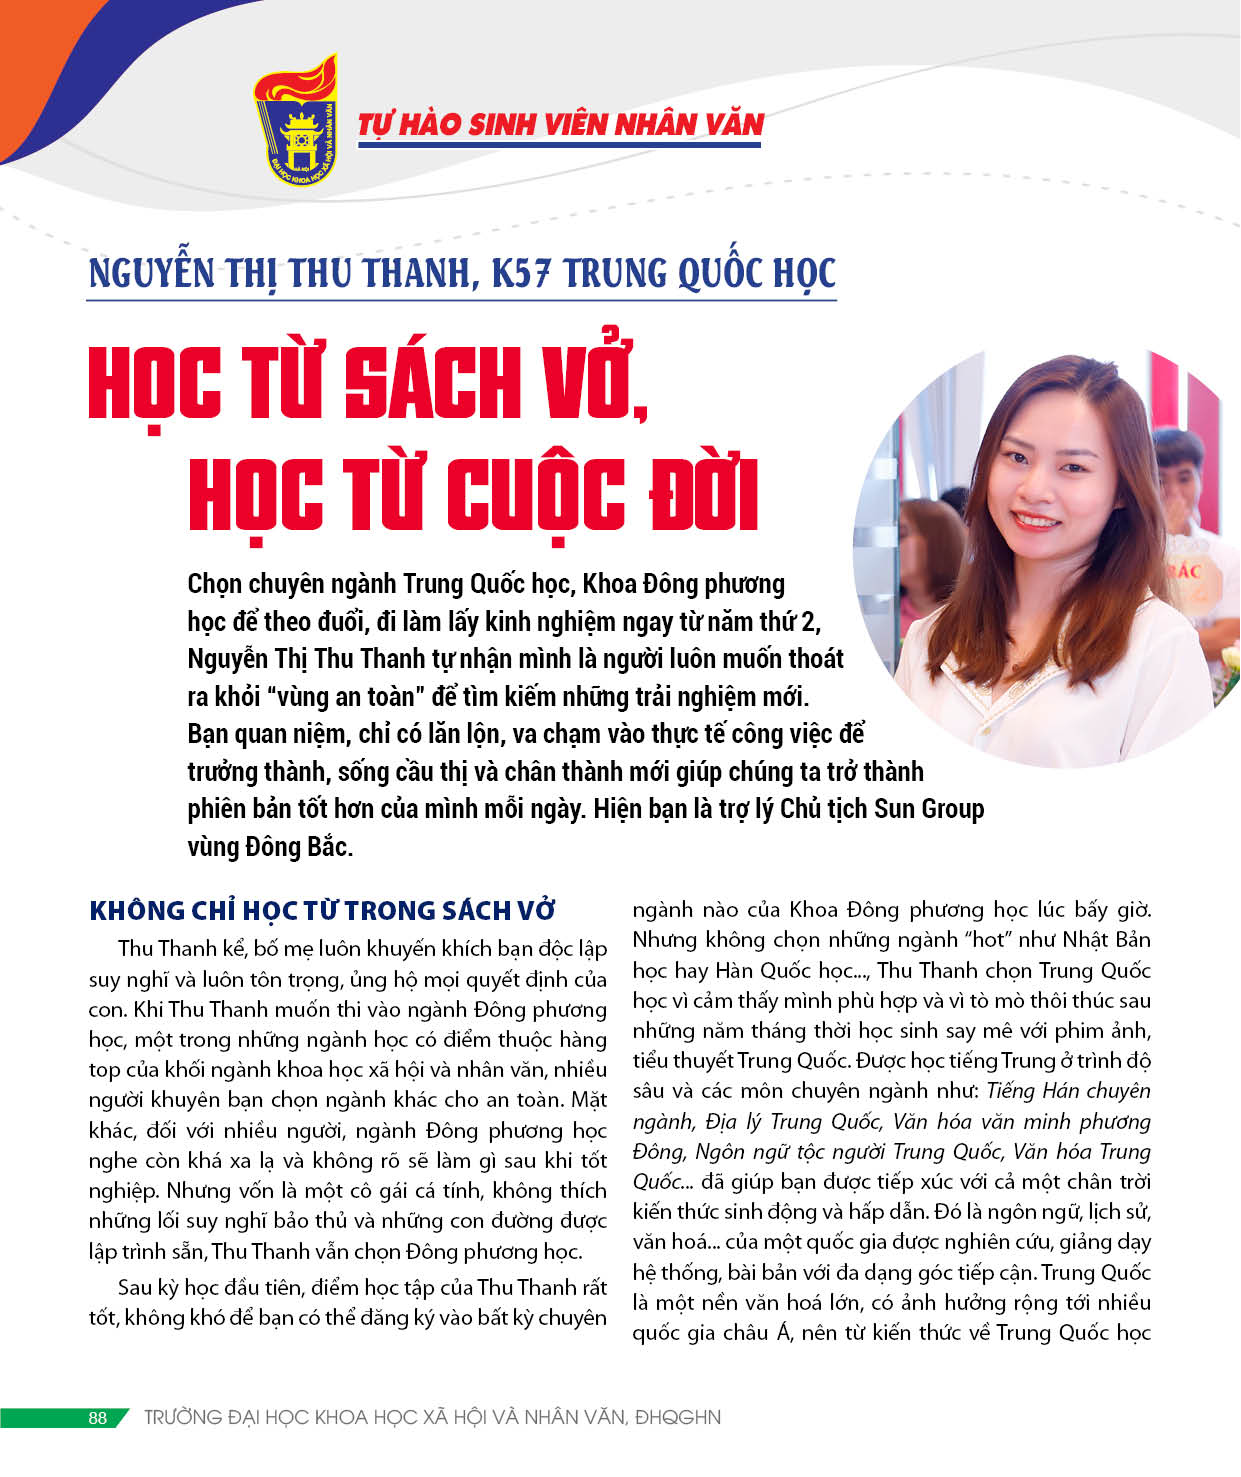 Thu Thanh CSV